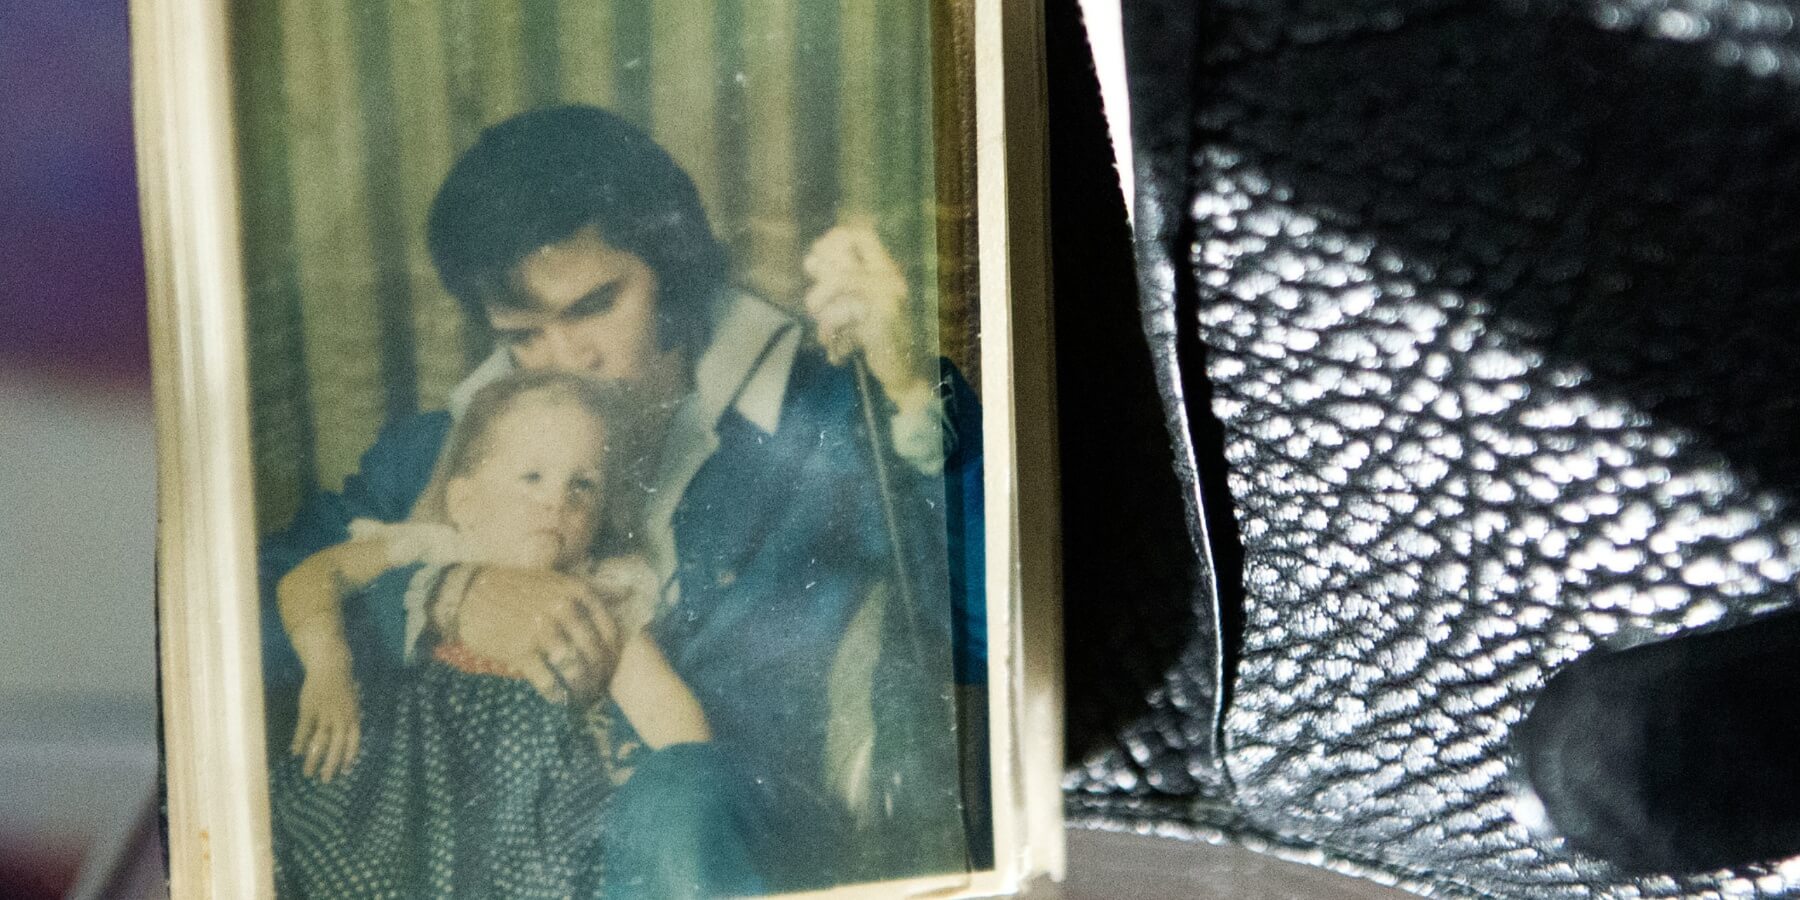 Elvis Presley's wallet held a photo of him and Lisa Marie Presley taken in 1970